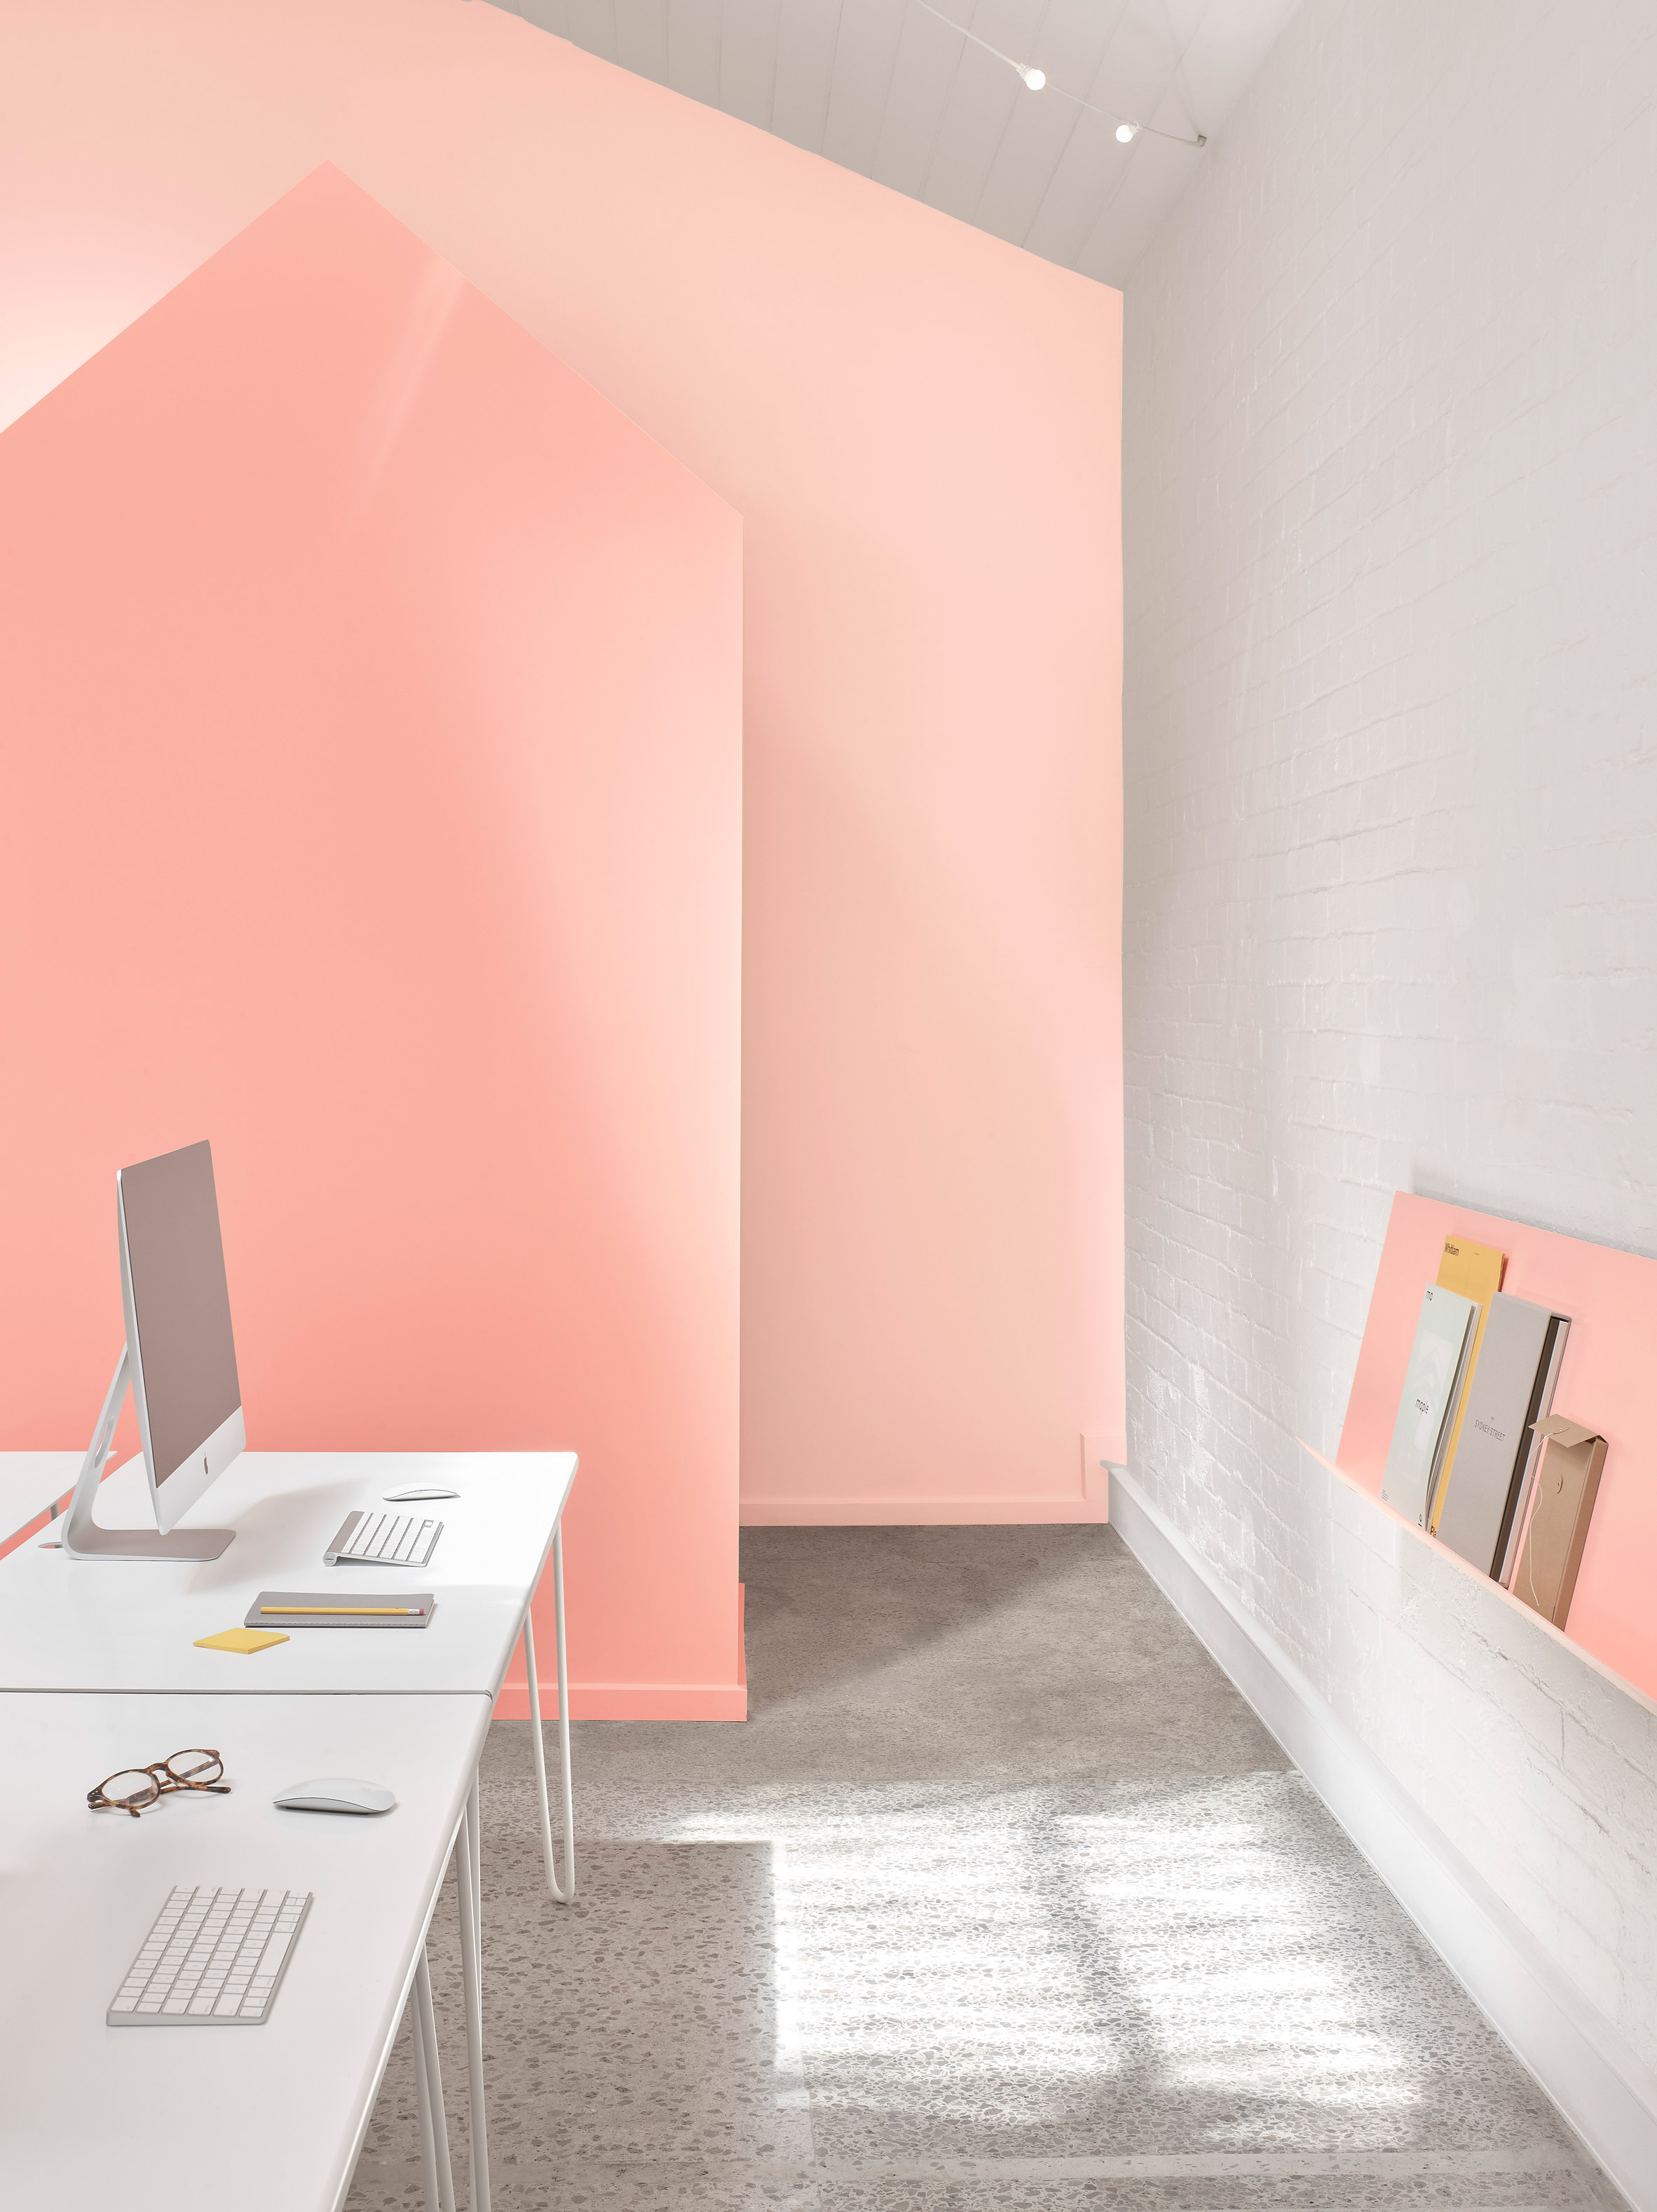 BoardGrove Architects use gradated tones of peach in Melbourne studio